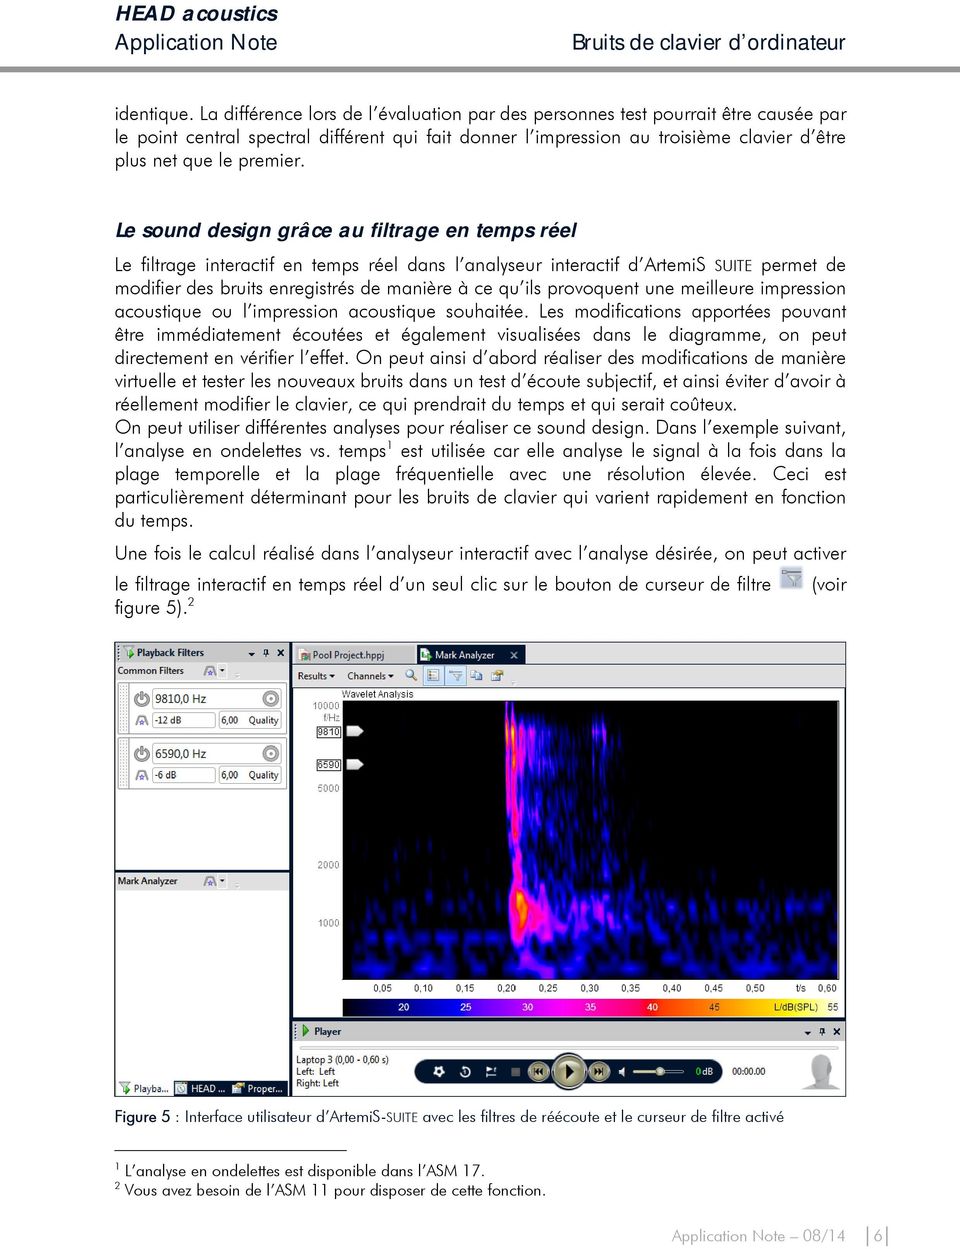 Le sound design grâce au filtrage en temps réel Le filtrage interactif en temps réel dans l analyseur interactif d ArtemiS SUITE permet de modifier des bruits enregistrés de manière à ce qu ils